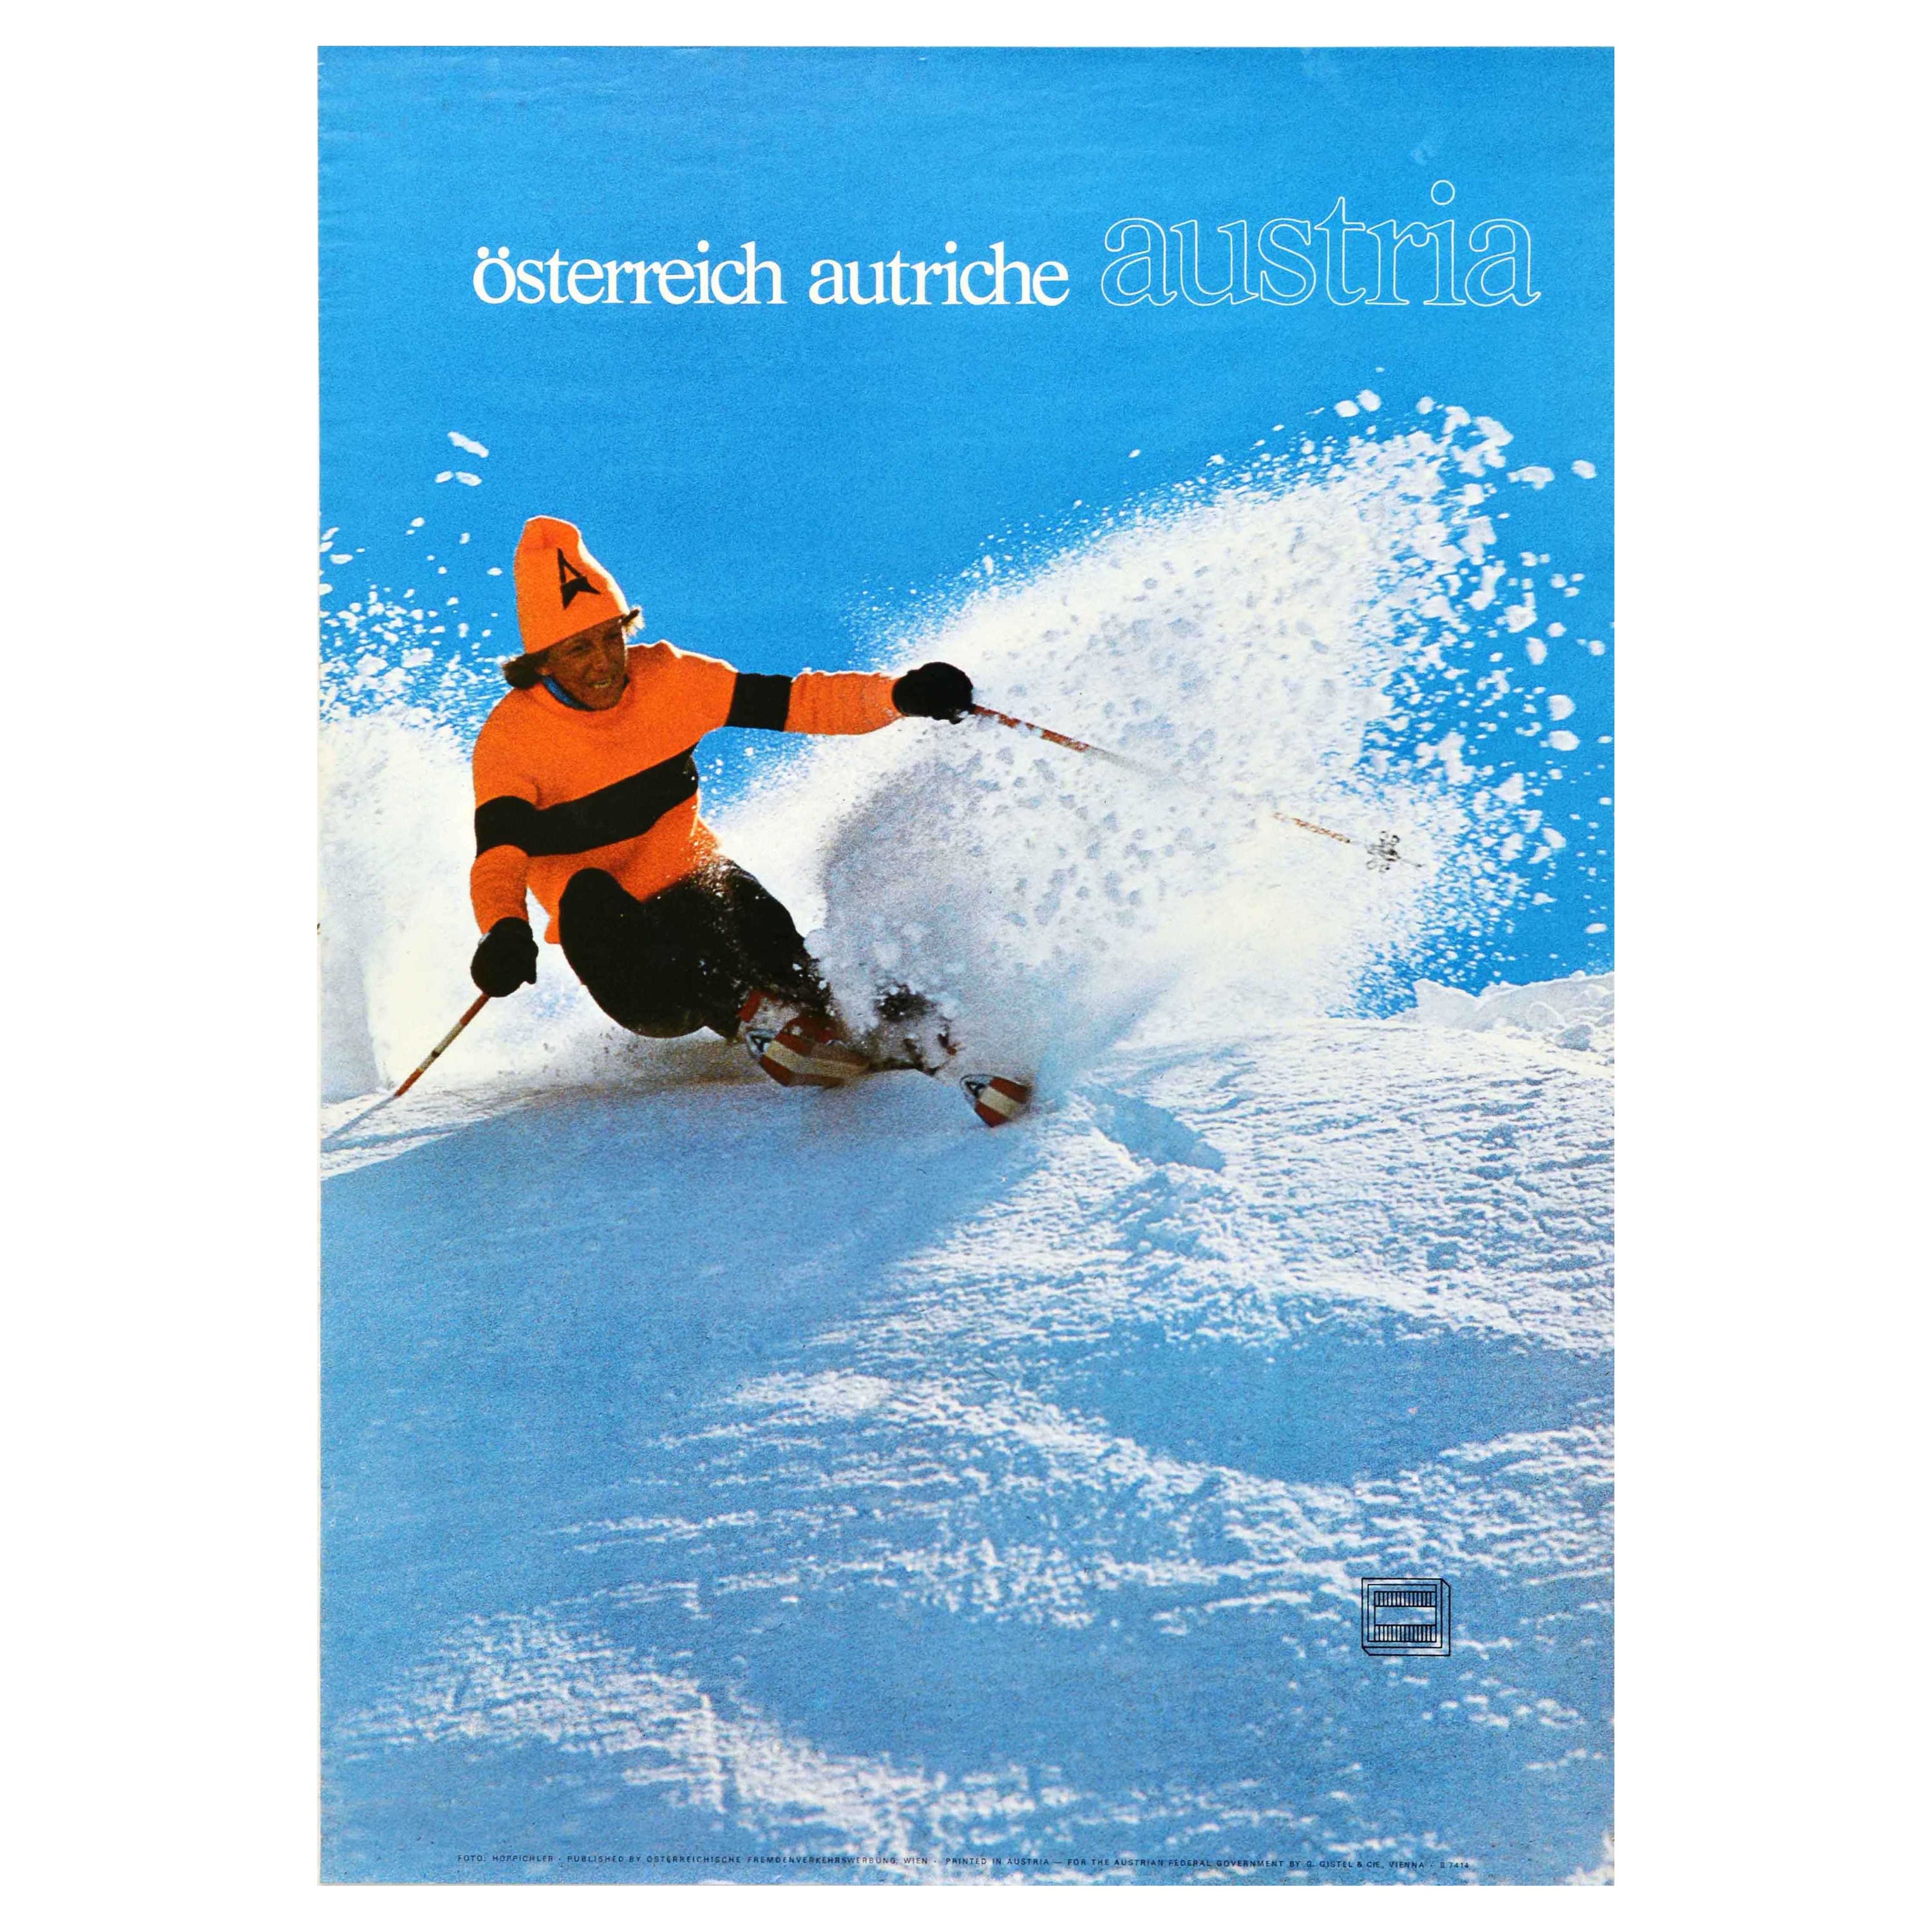 Original Vintage Ski Poster Osterreich Autriche Austria Winter Sport Travel For Sale